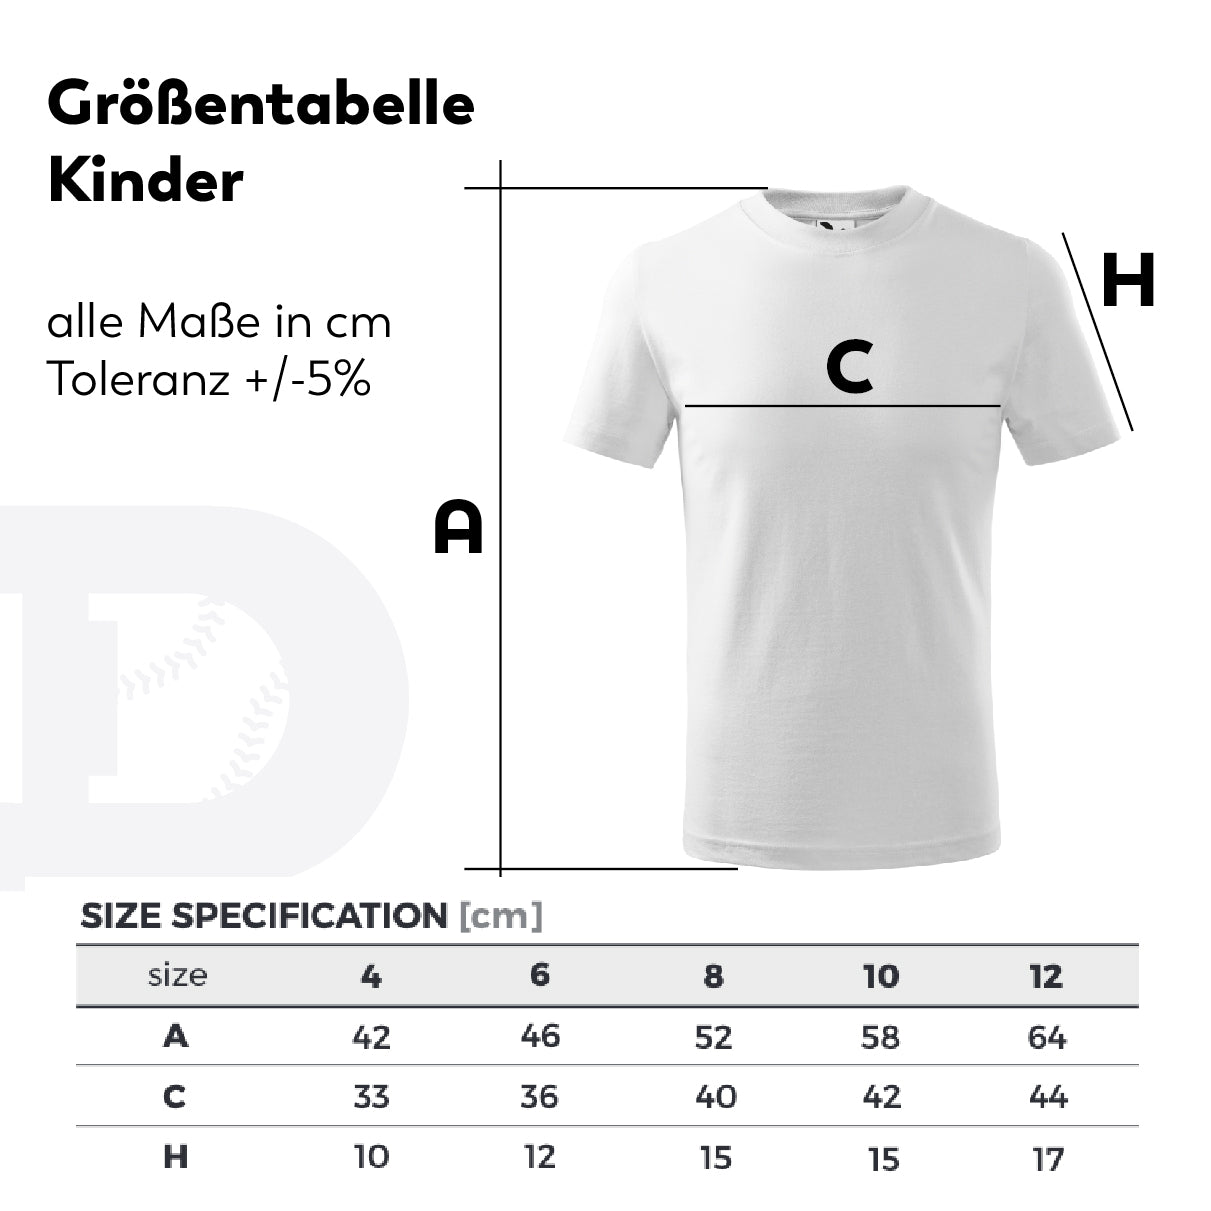 Baseball | T-Shirt Kinder in 2 Farben – DUKES vertikal #1